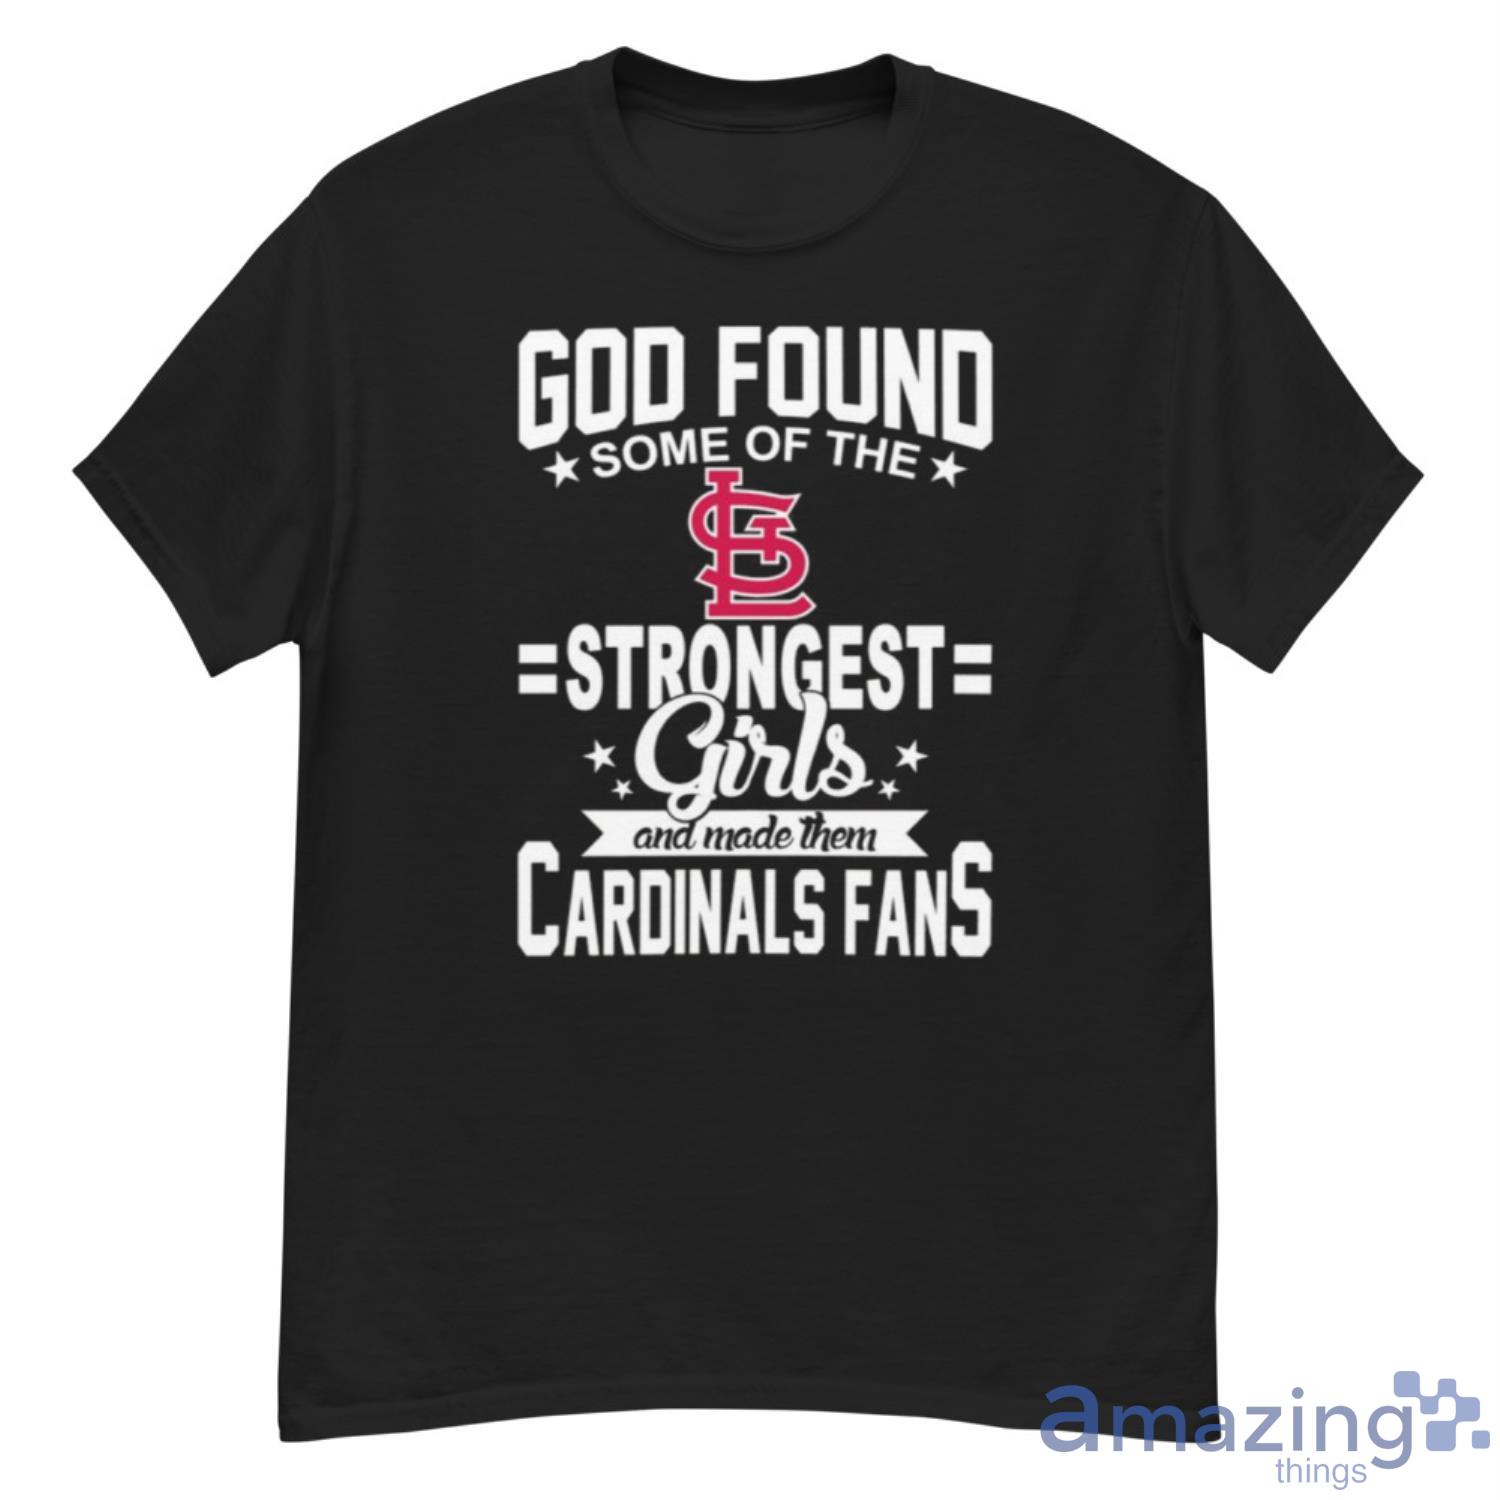 St. Louis Cardinals MLB Stitch Baseball Jersey Shirt Design 8